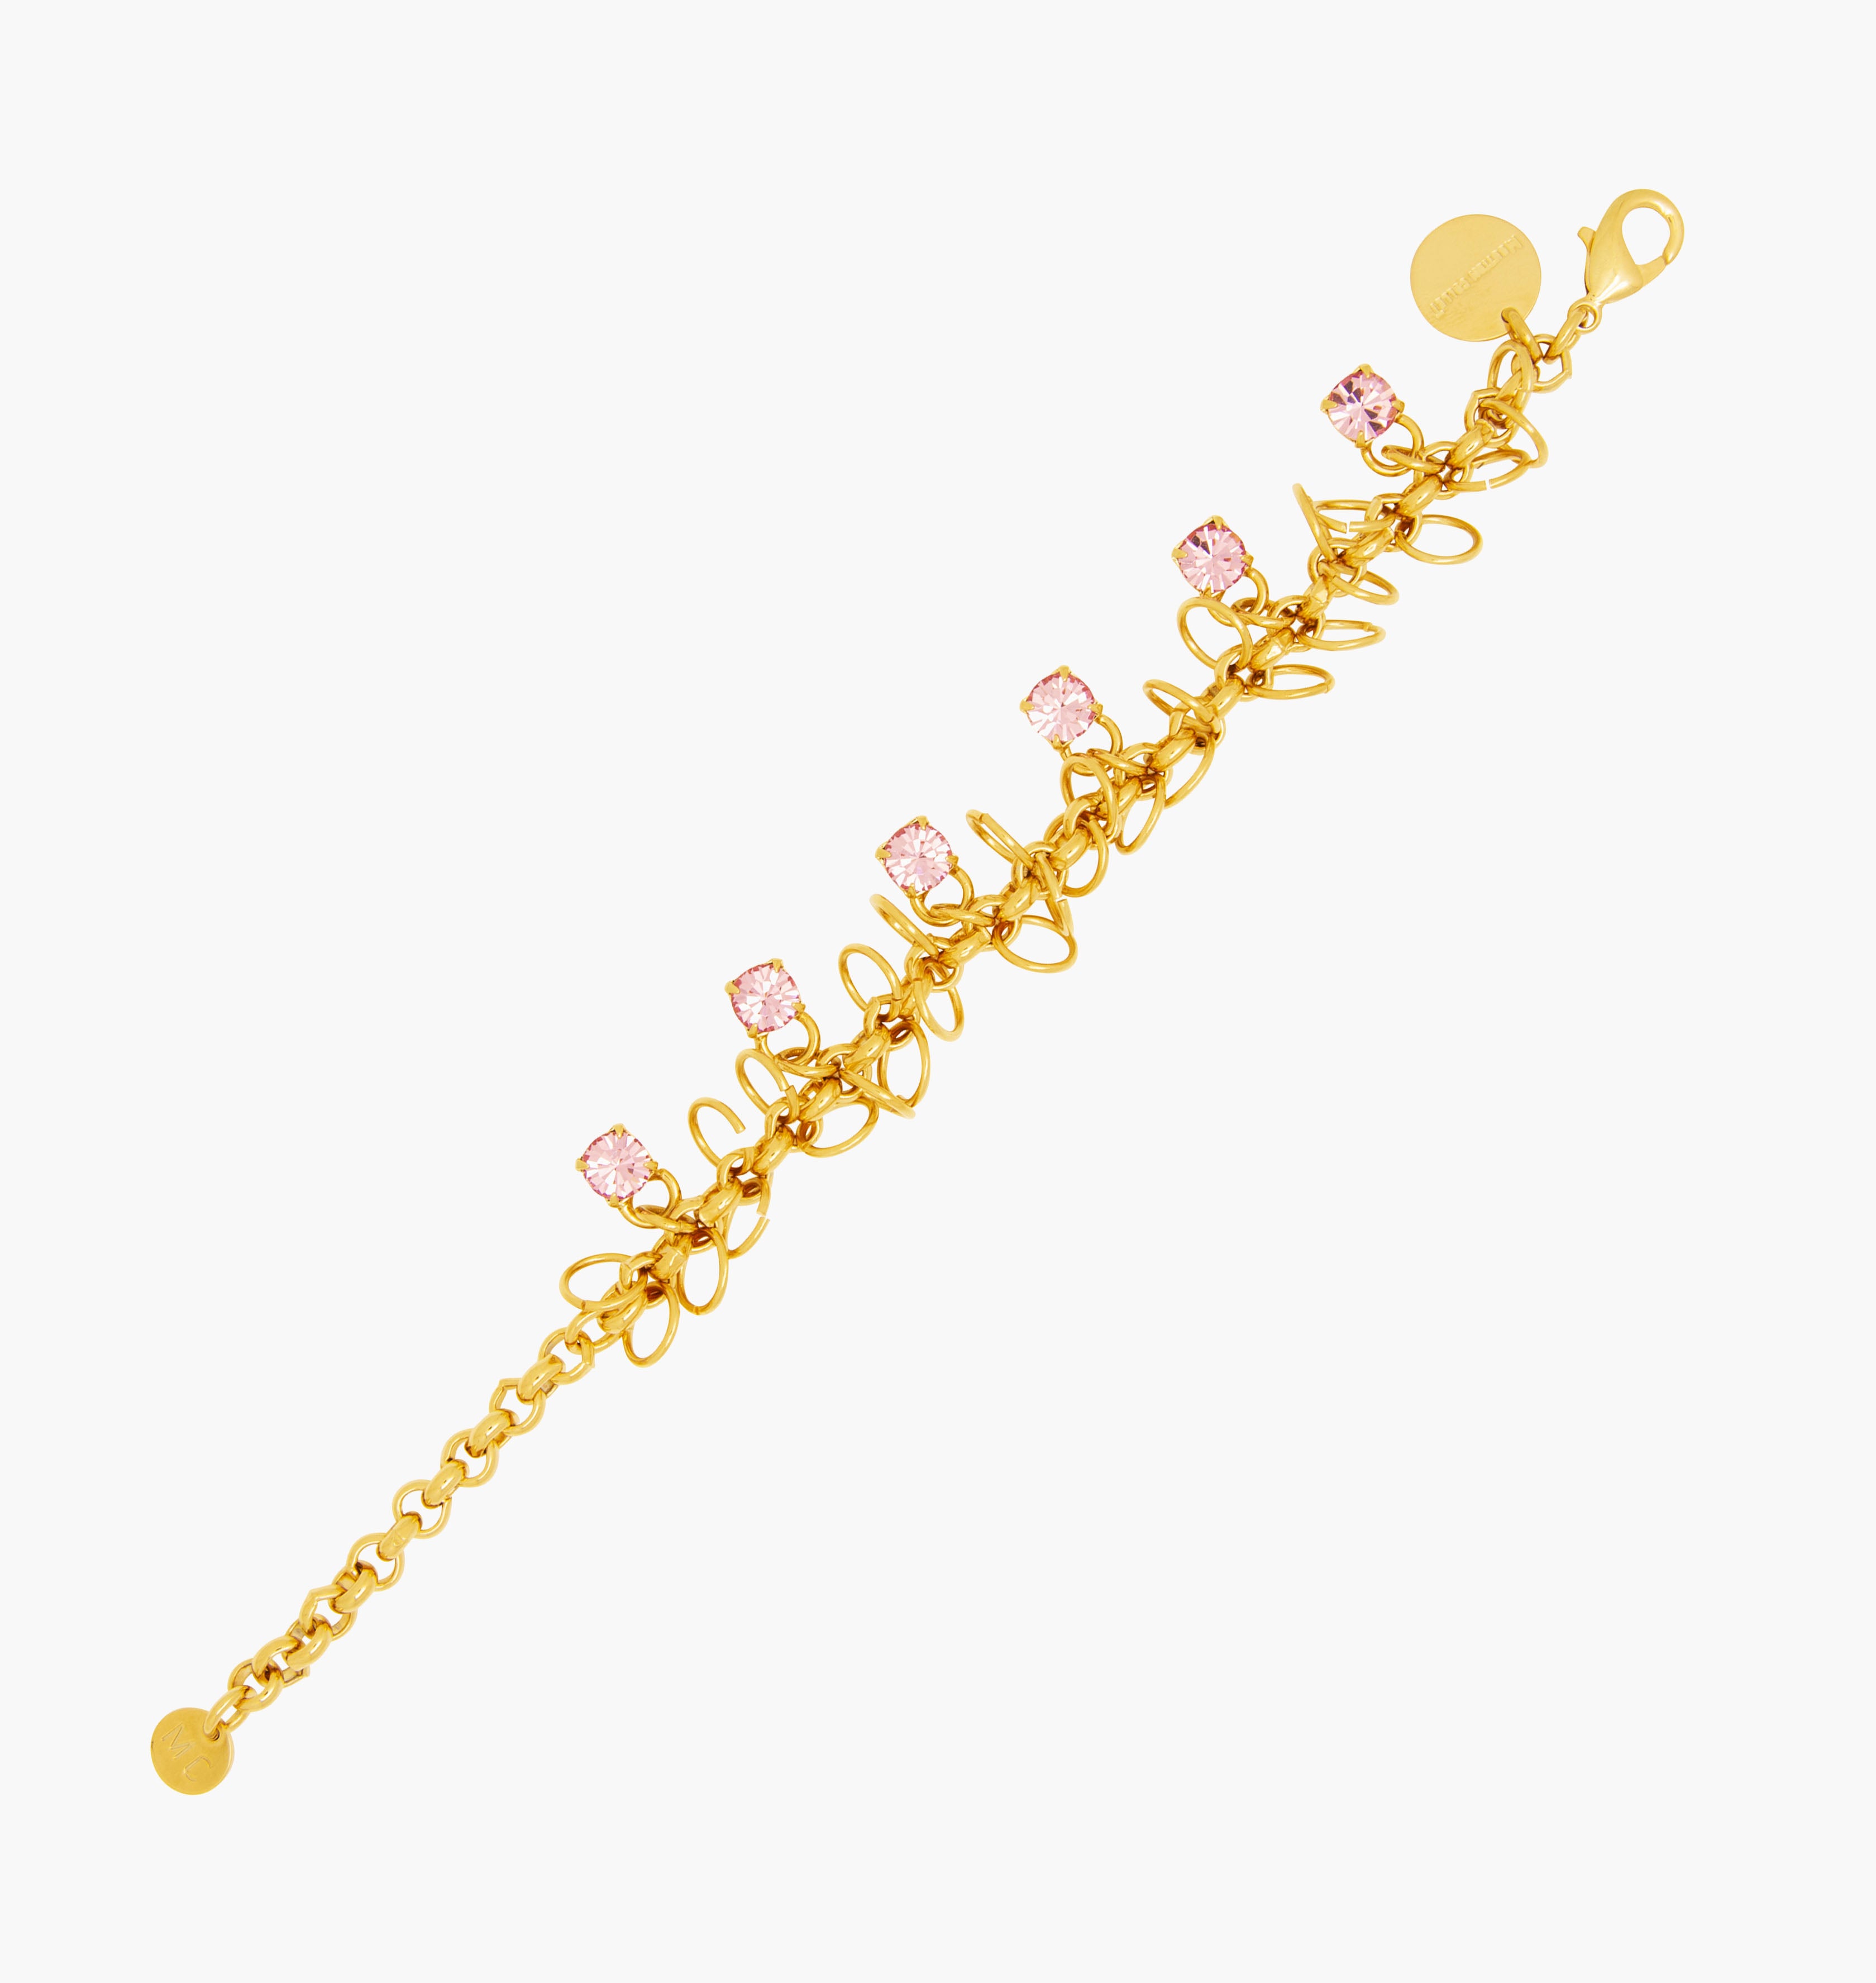 Bracelet STARS Light Rose - shop.mouttoncollet.com, Moutton collet, Notre bracelet STARS est réalisé en bronze dorées à l'or fin, serties de cristaux scintillants coloris light rose avec de grands anneaux. Il est orné d'un médaillon gravé "Moutton colleT" et d'un petit logo gravé "MC". Il sera assez discret pour être associé à vos tenues du quotidien, swarovski, bijou rose, bijou pink, bijou moderne, bijoux fantaisie, bijou de qualité, chanel, dior,